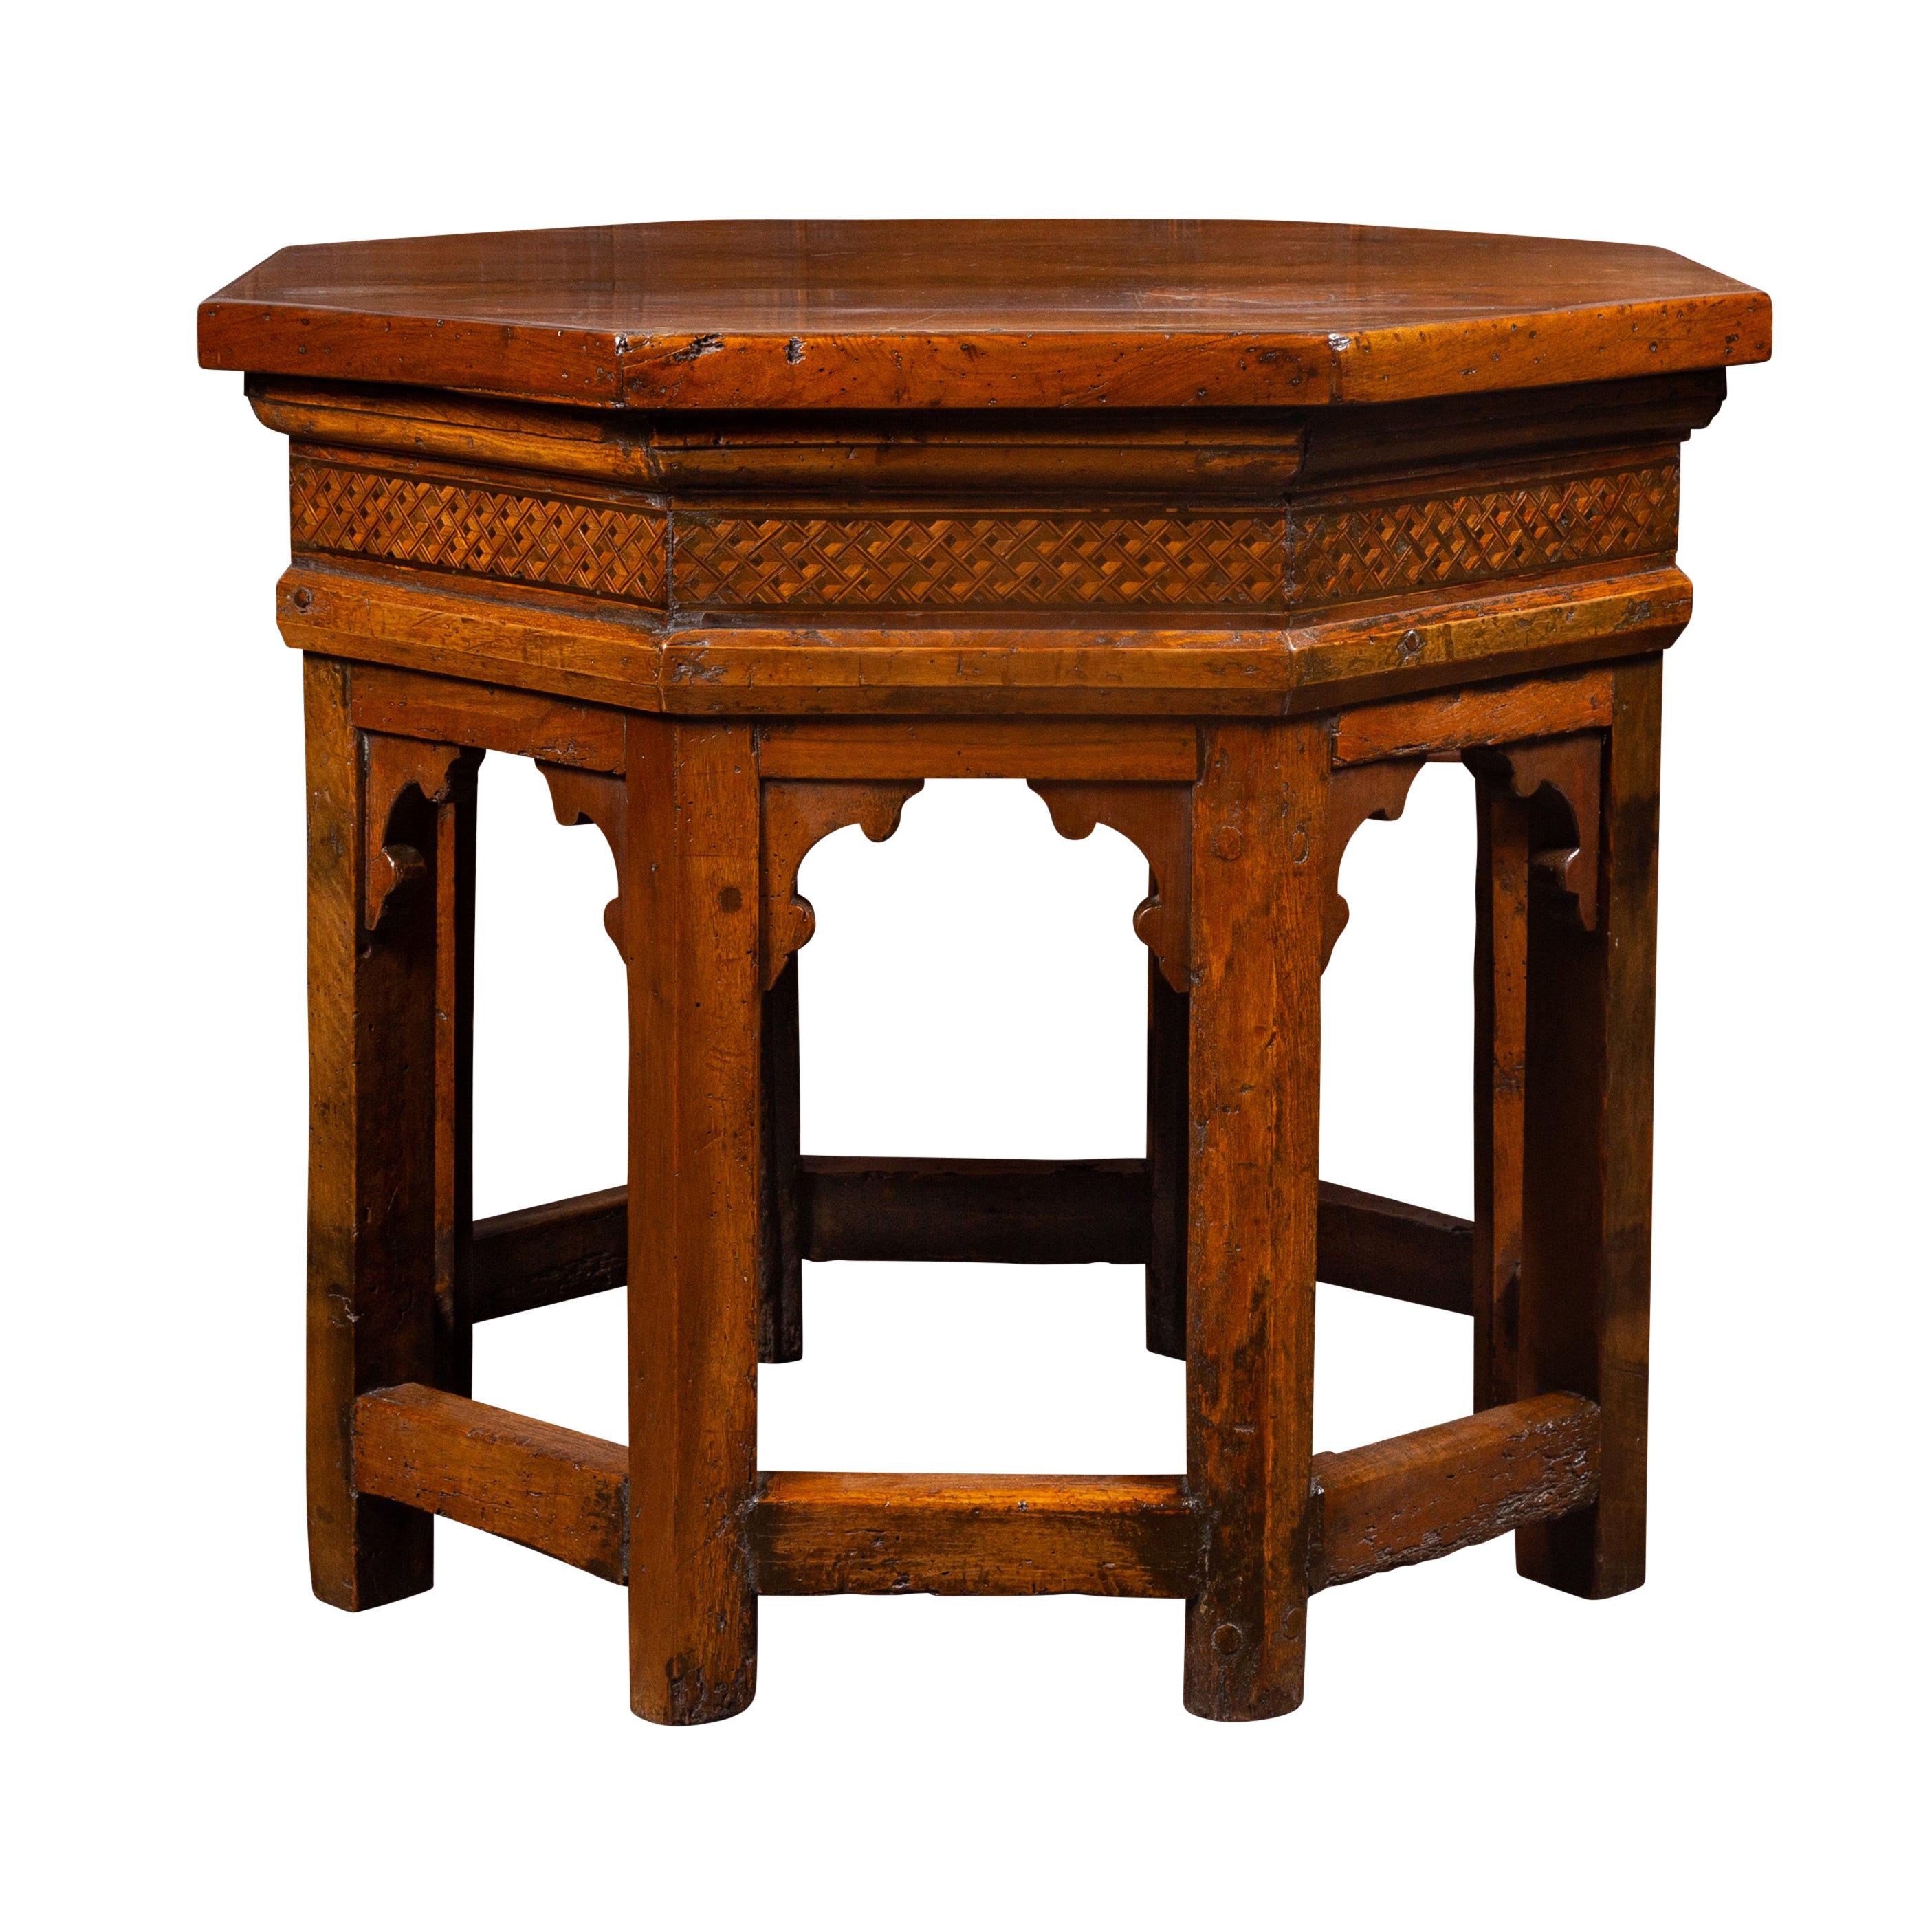 Table octogonale en noyer du 19ème siècle avec motifs Trompe-l'Œil incrustés